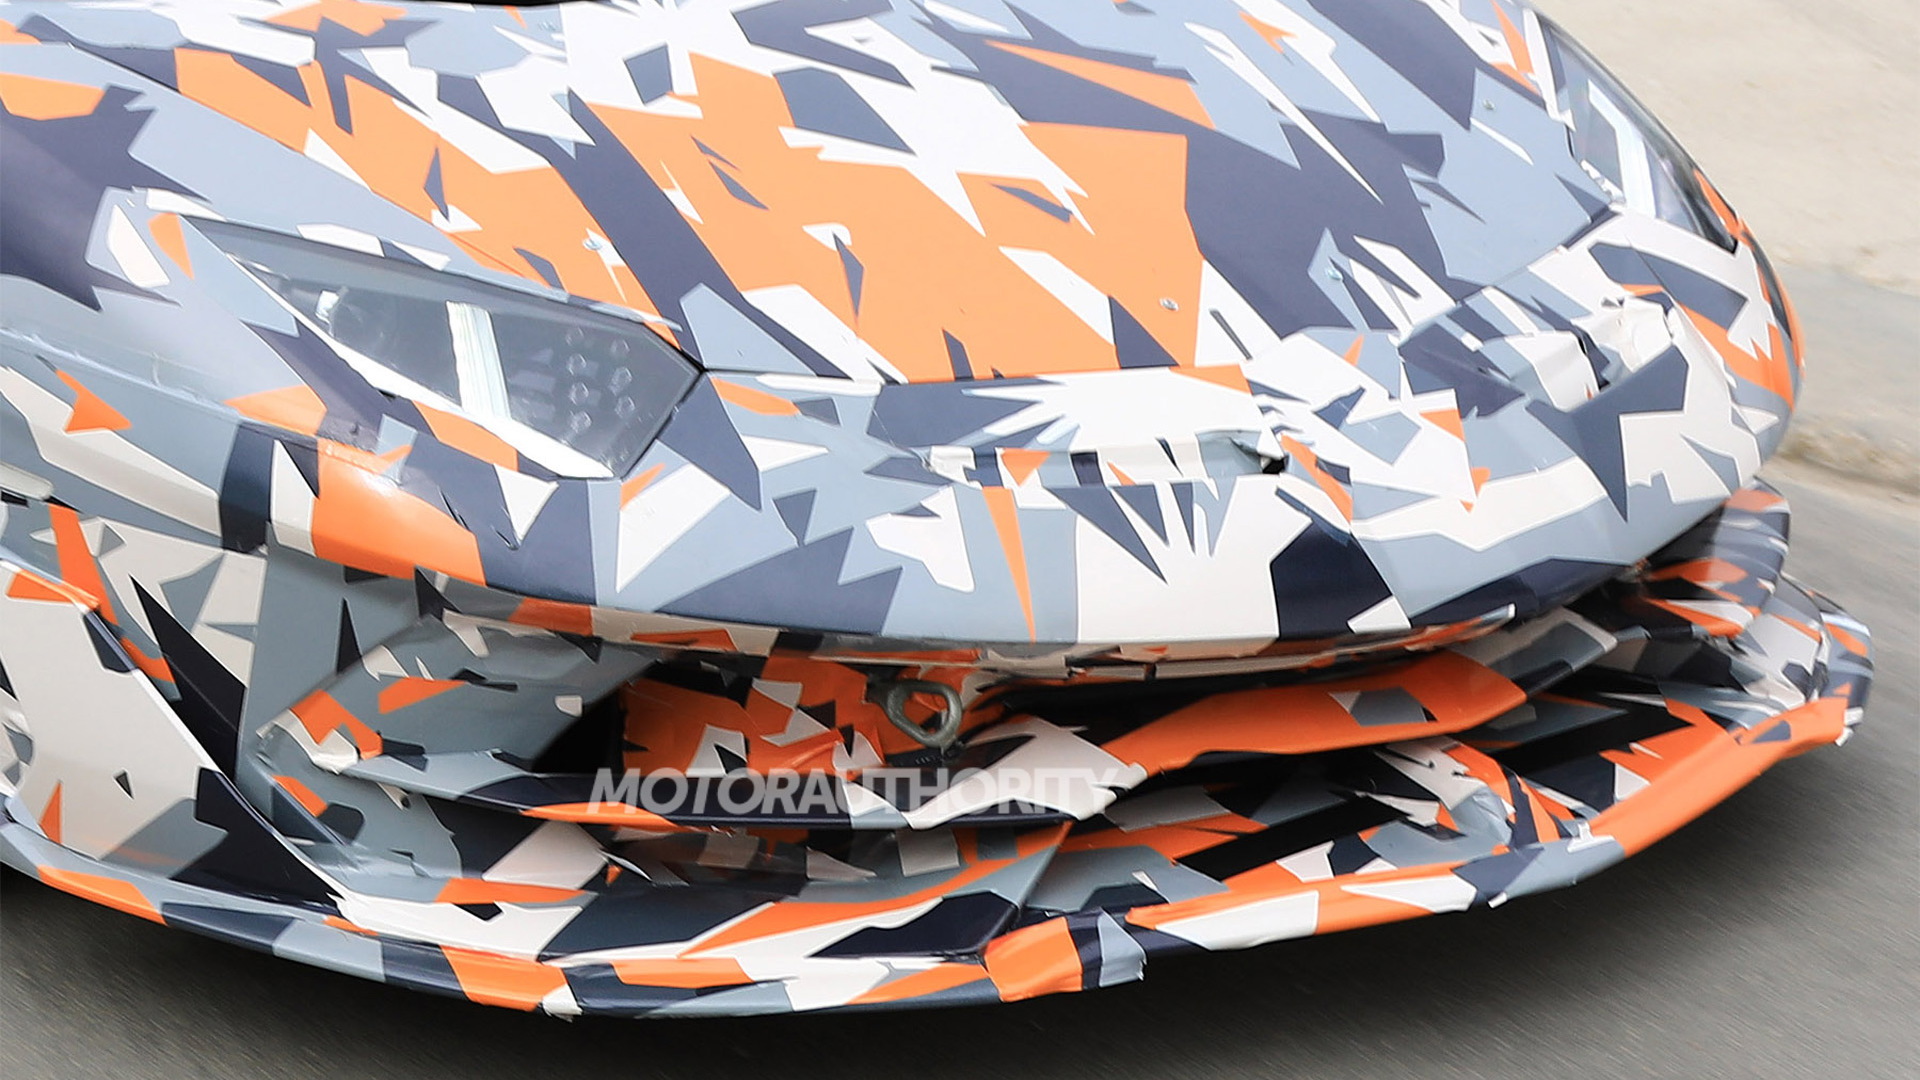 2020 Lamborghini Aventador SVJ spy shots - Image via S. Baldauf/SB-Medien